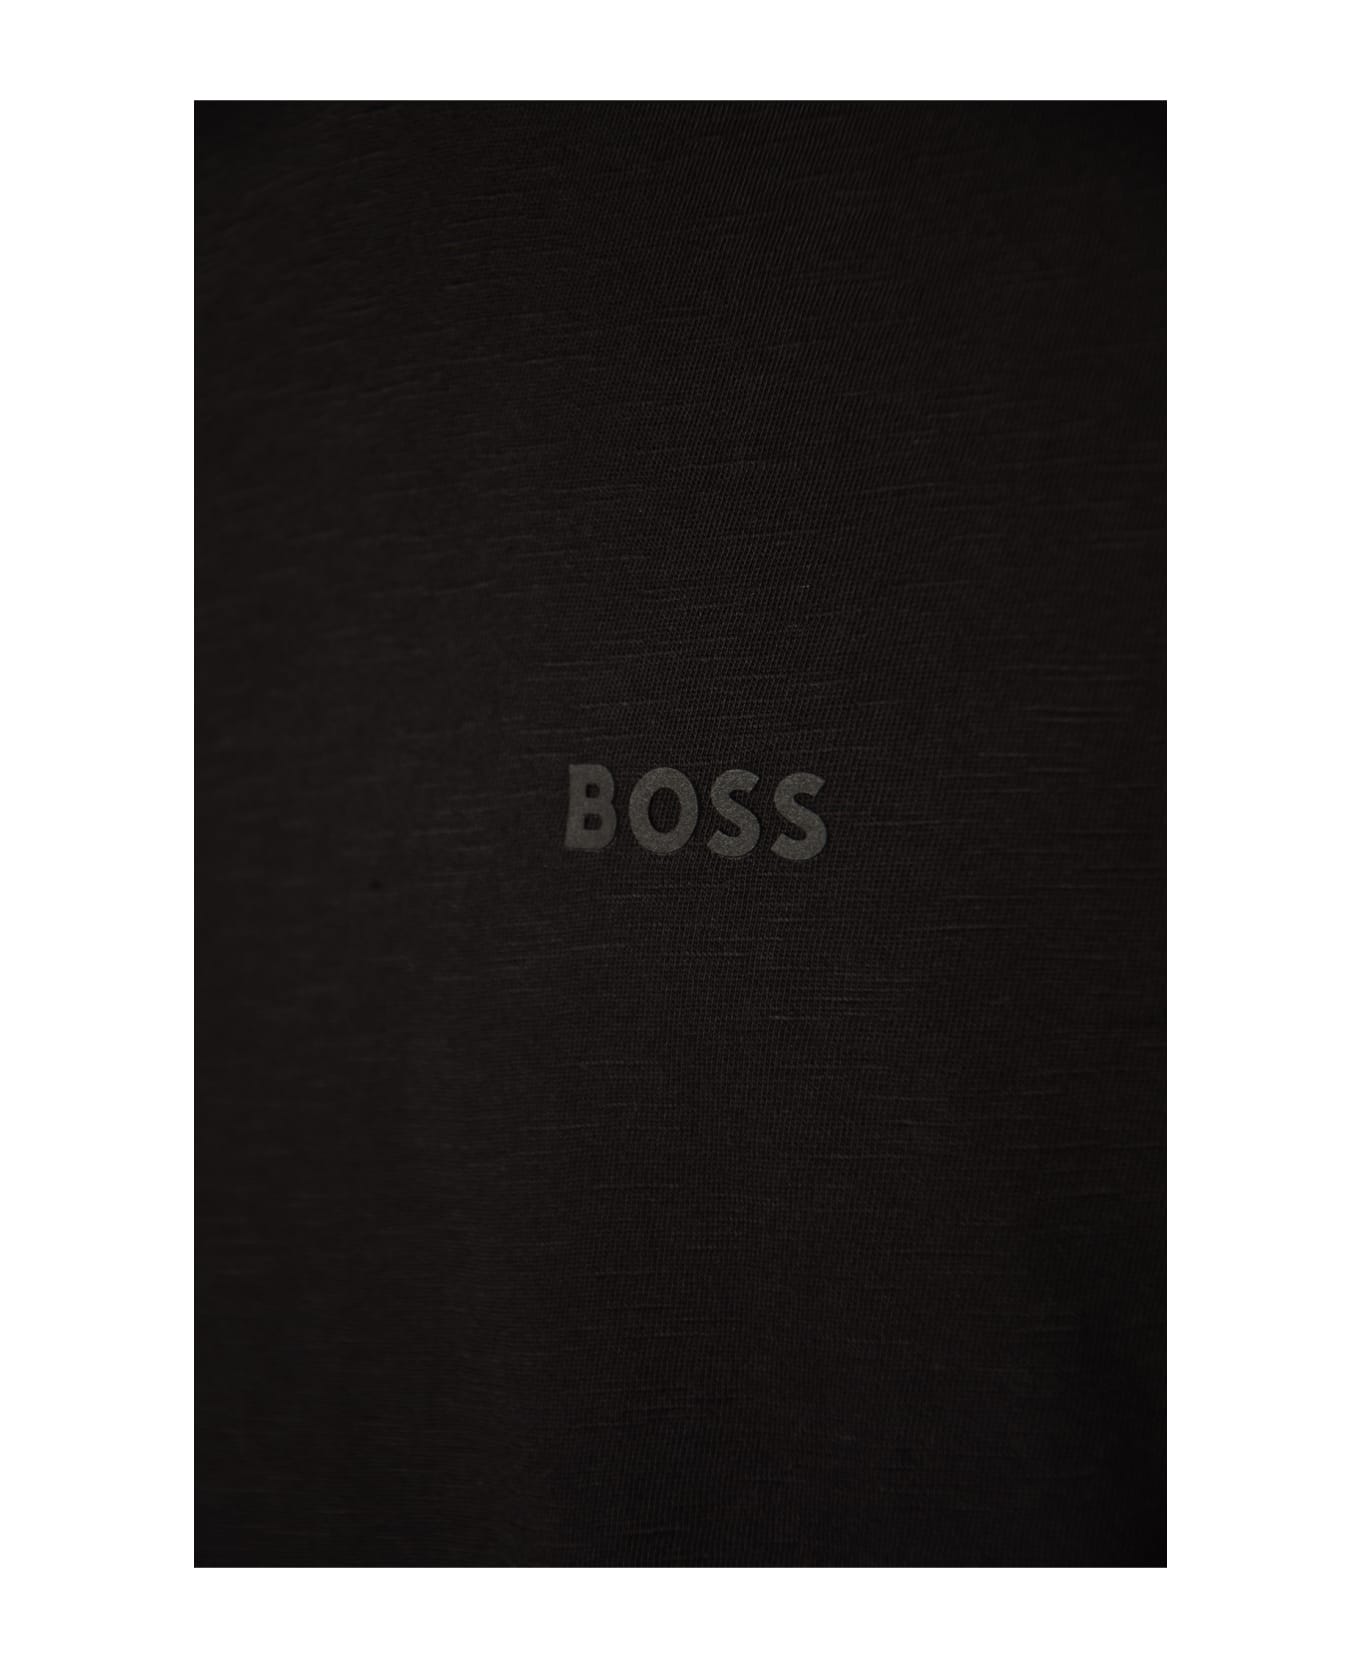 Hugo Boss Logo T-shirt - Black シャツ